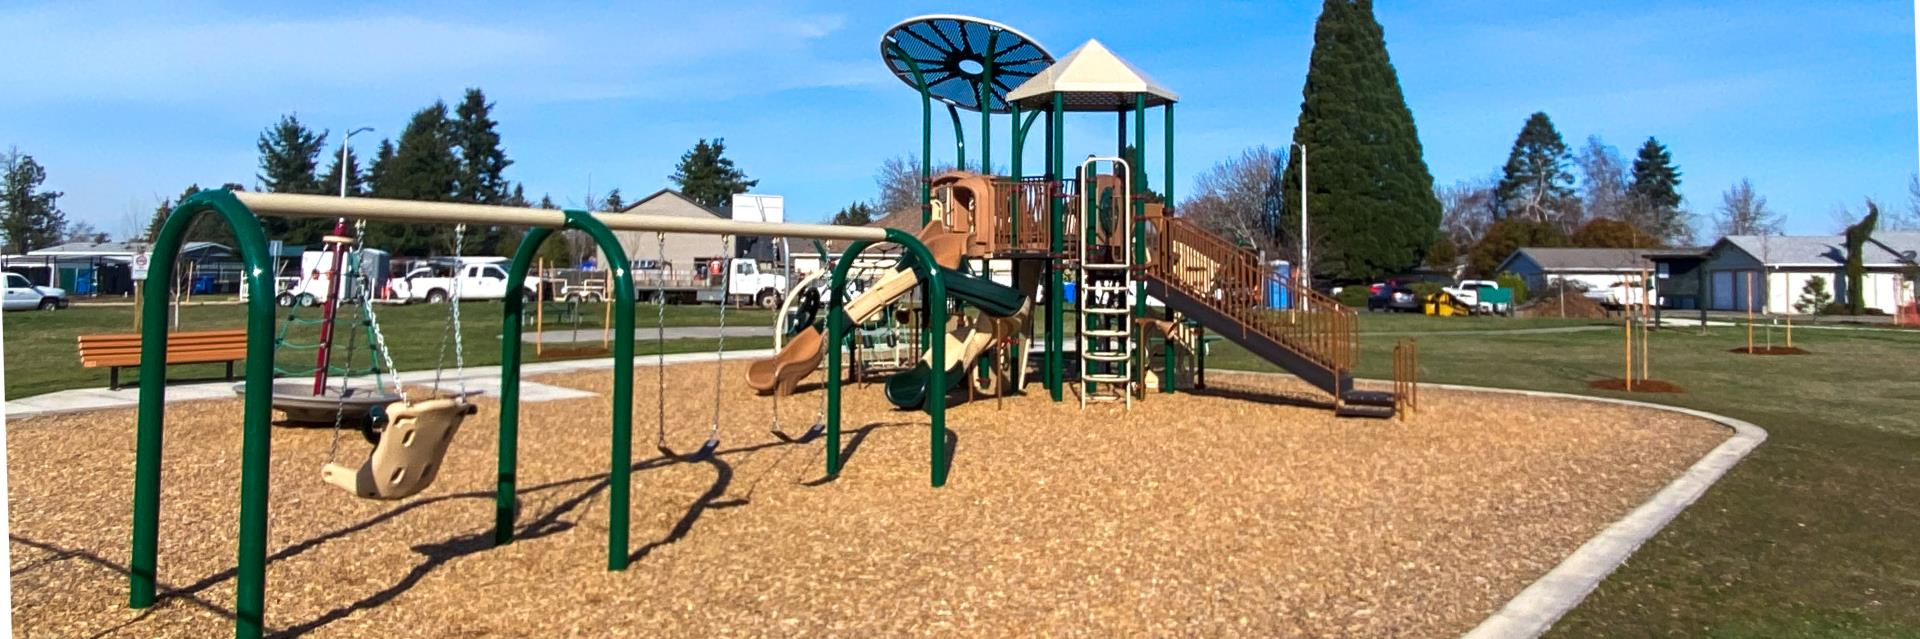 Bill Reigel Park Playground